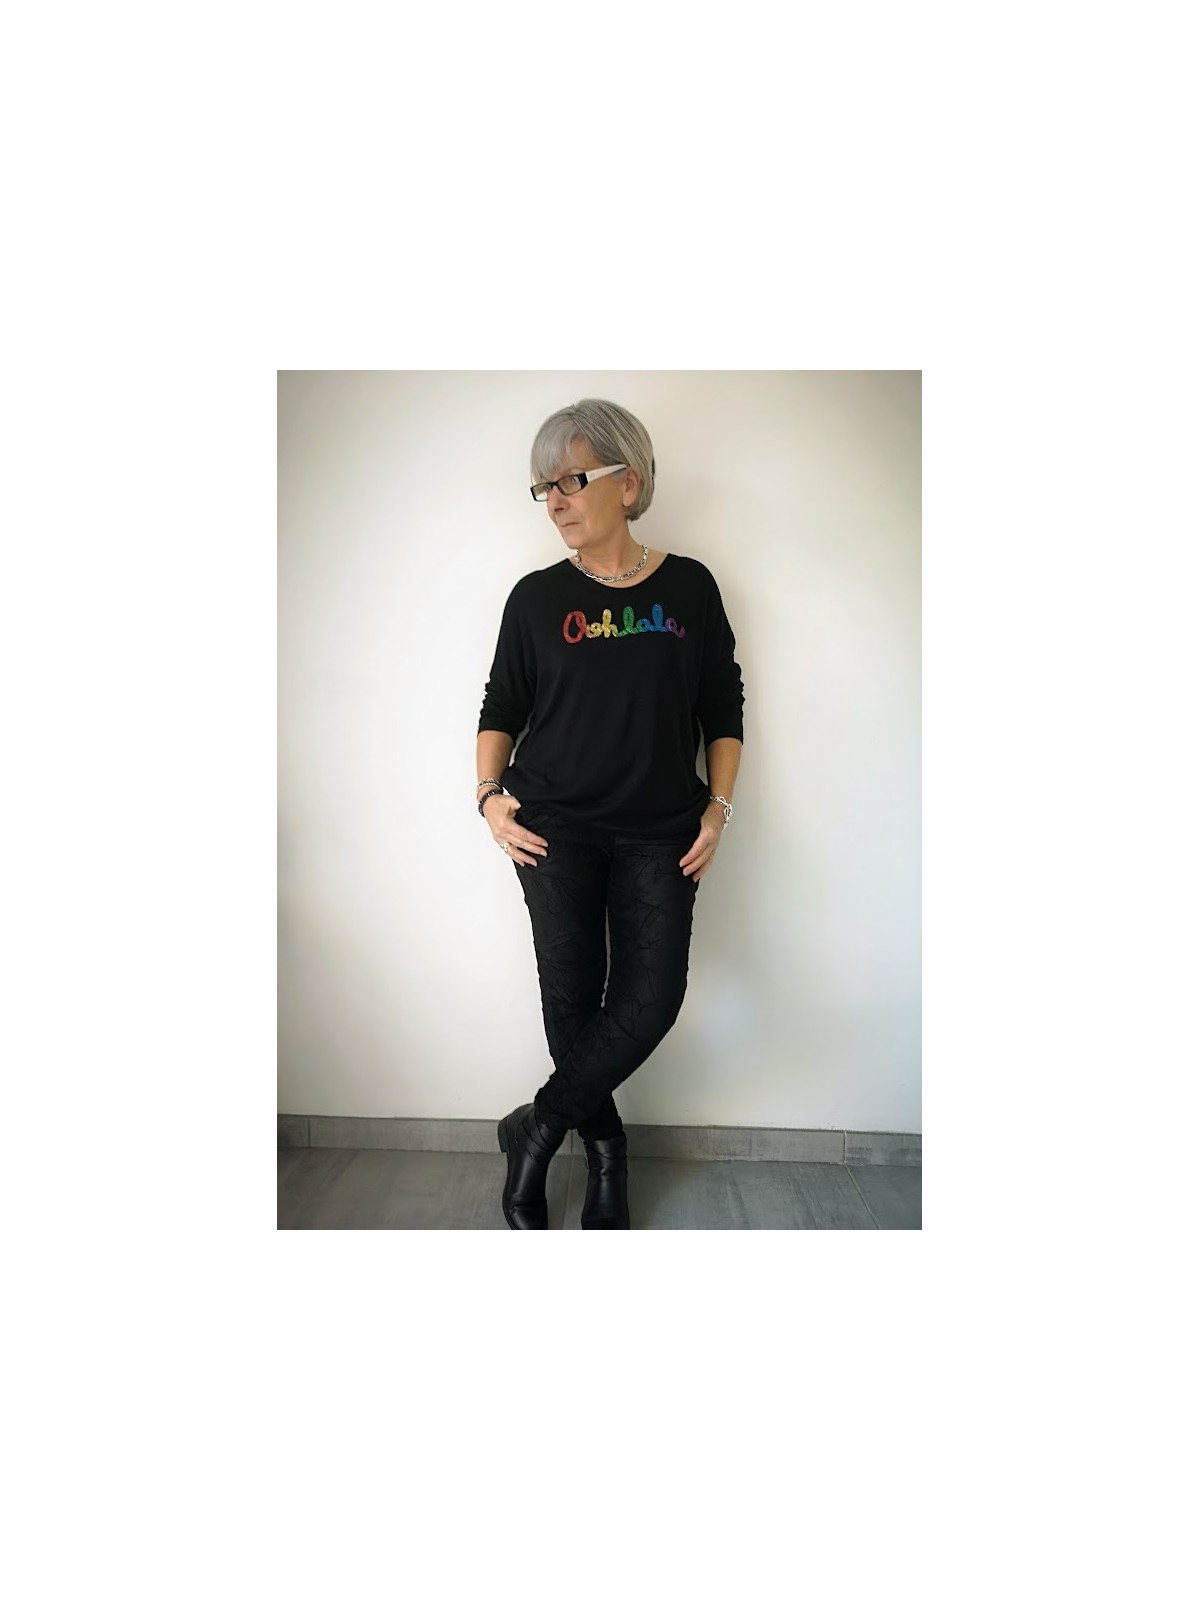 T-shirt manches longues avec inscriptions colorées l 2 vue entière l Tilleulmenthe mode boutique de vêtements femme en ligne